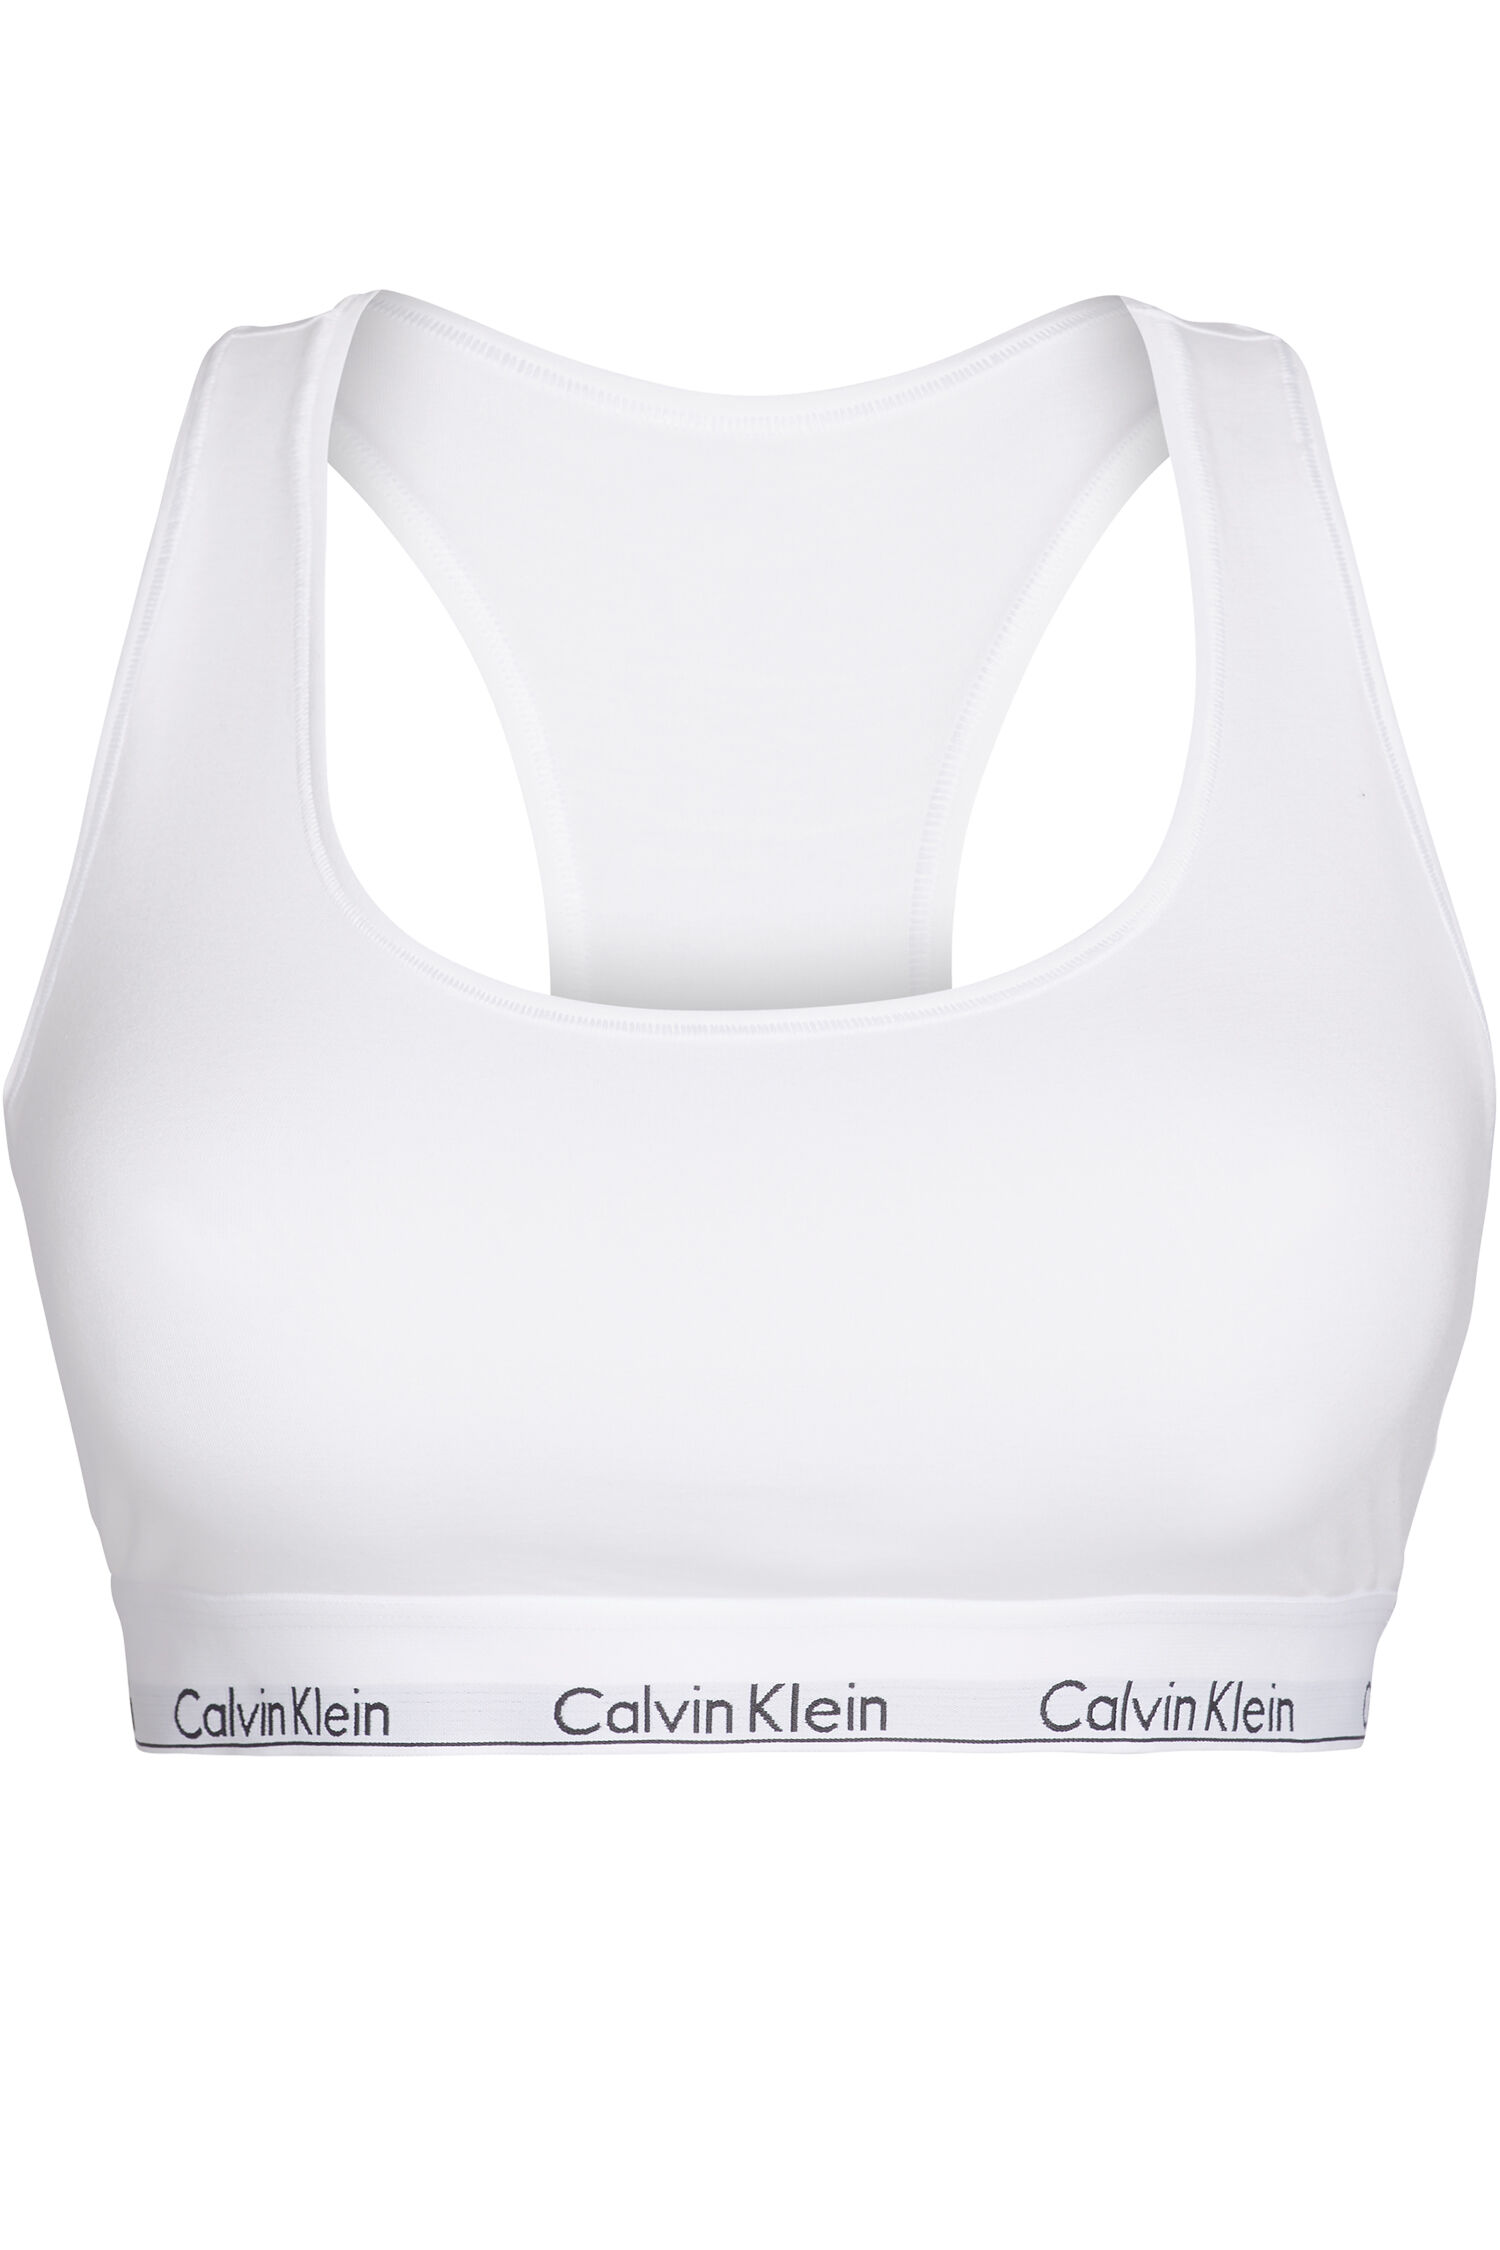 calvin klein brassiere blanche